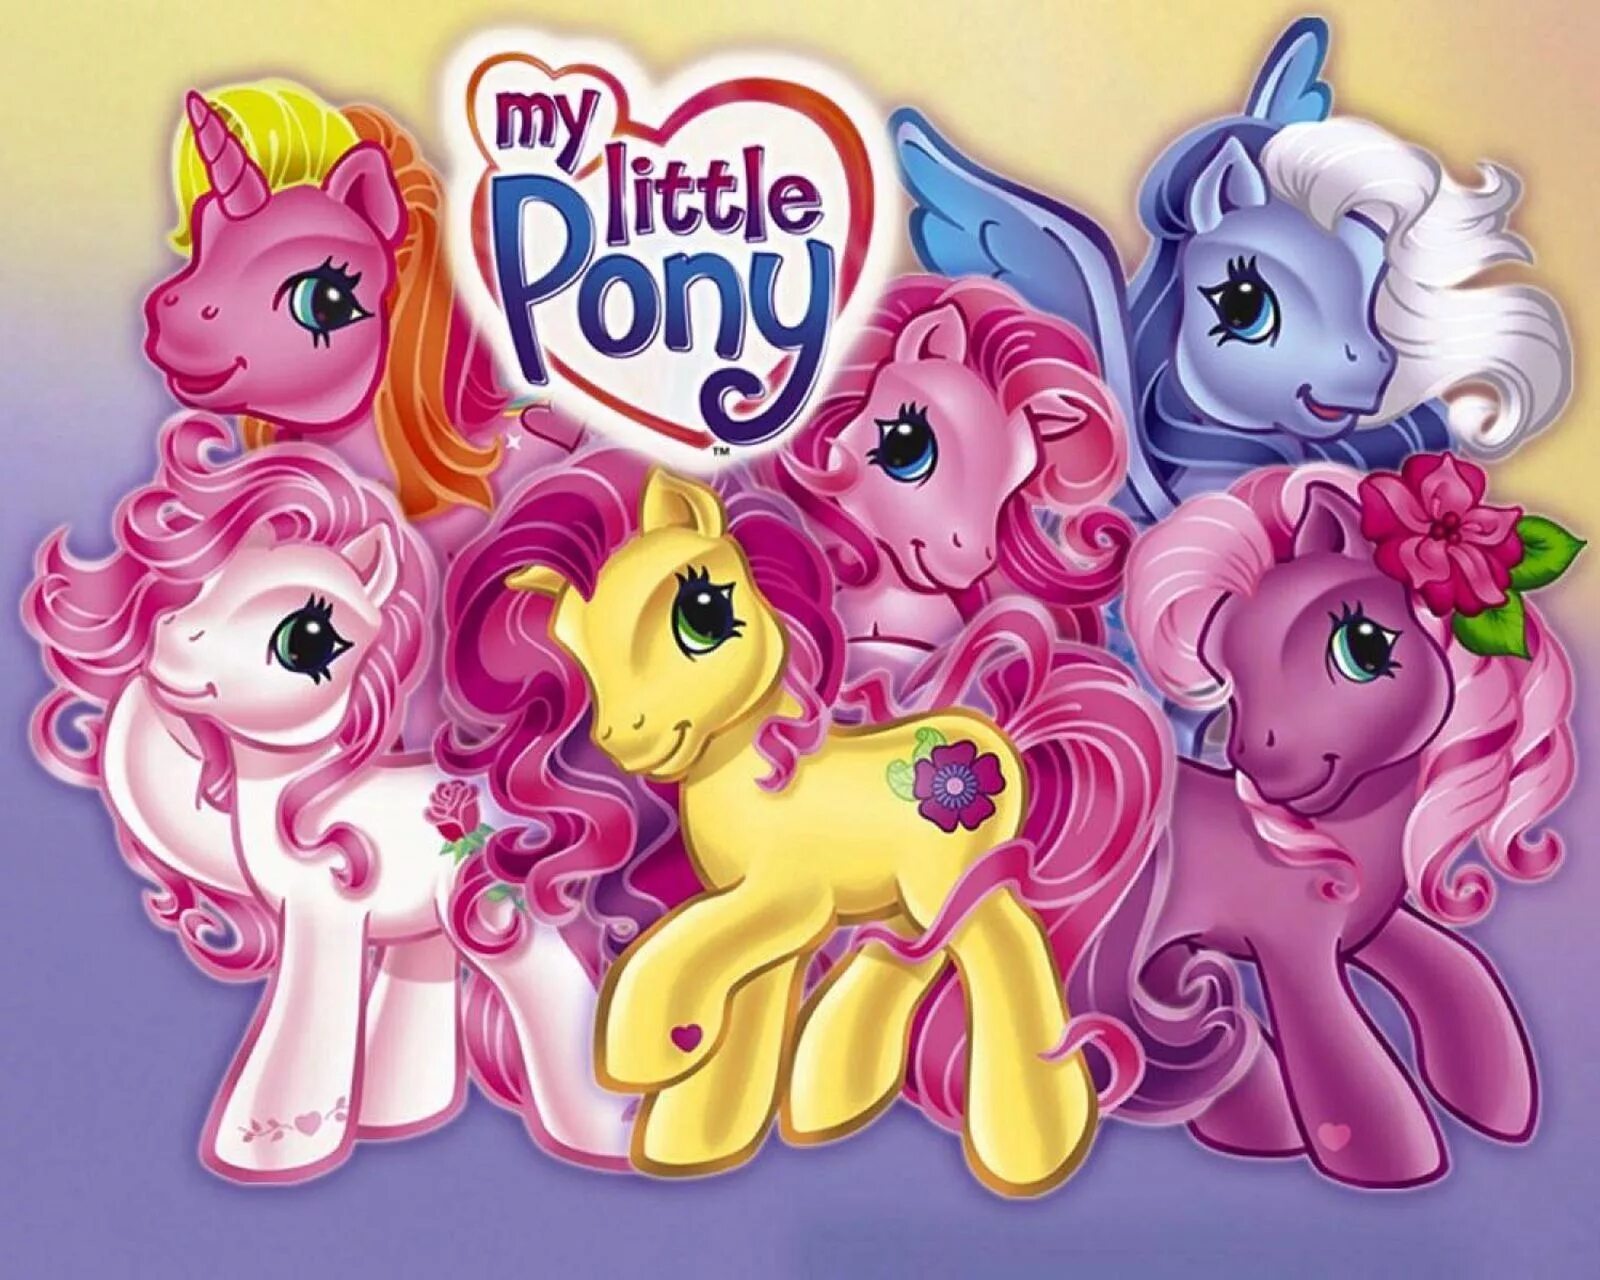 Pony may. My little Pony g3. My little Pony Ponyville g3 игрушки.